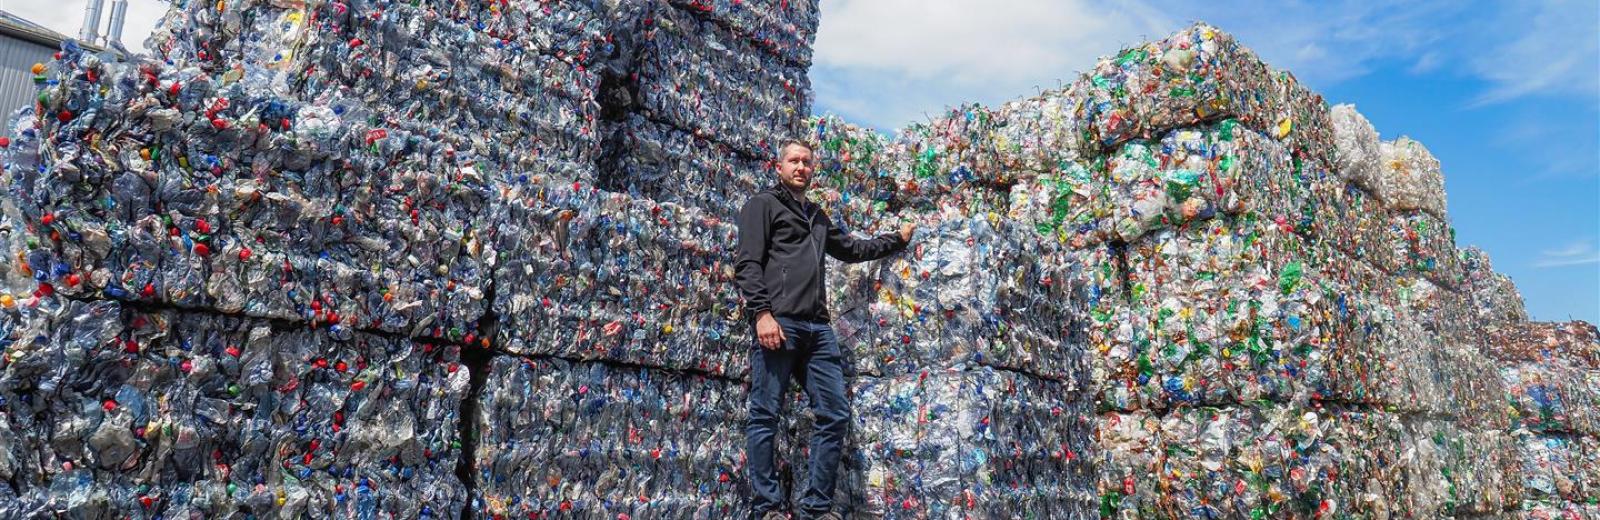 Chaque jour, Müller Recycling trie 90 tonnes de bouteilles de boisson en PET en fonction de leur couleur. Le directeur de l’entreprise, Thomas Müller, est fier de la pureté et de la qualité élevée de ce matériau. © Müller Recycling AG